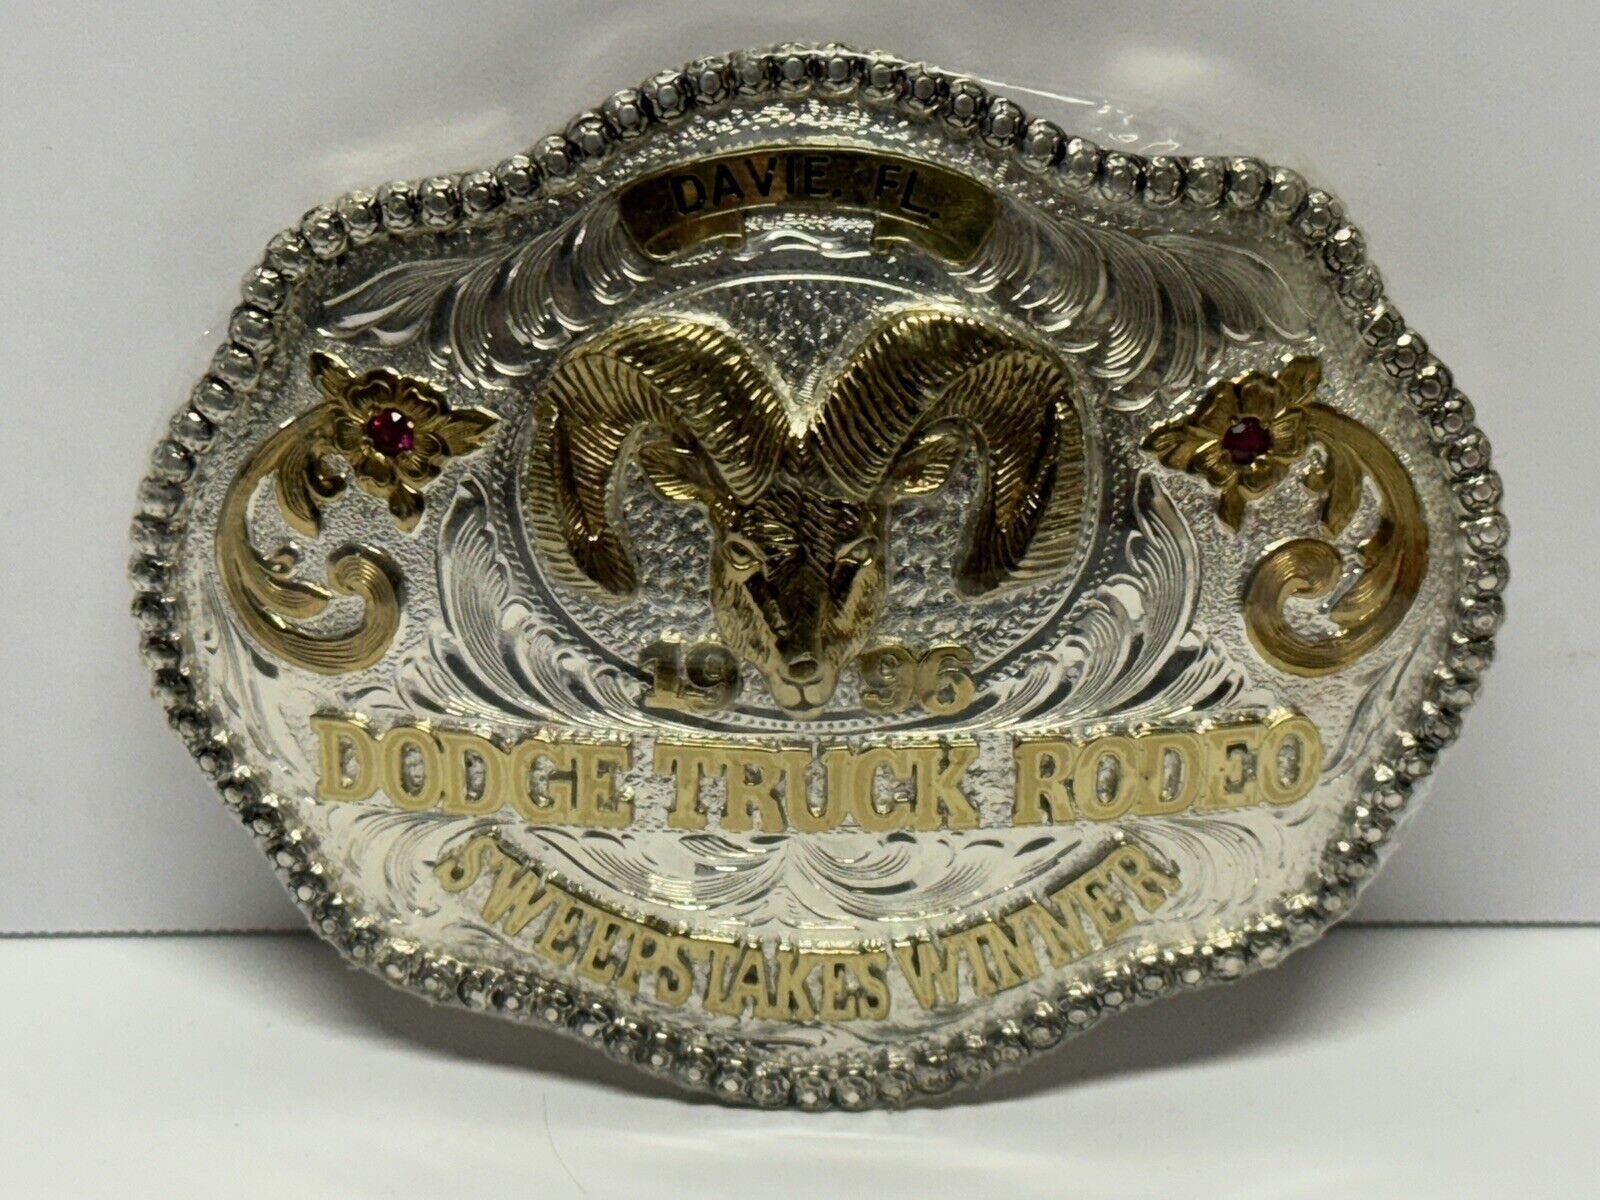 Rare 1996 Dodge Truck Rodeo Sweepstakes Winner Belt Buckle Wrangler Sealed